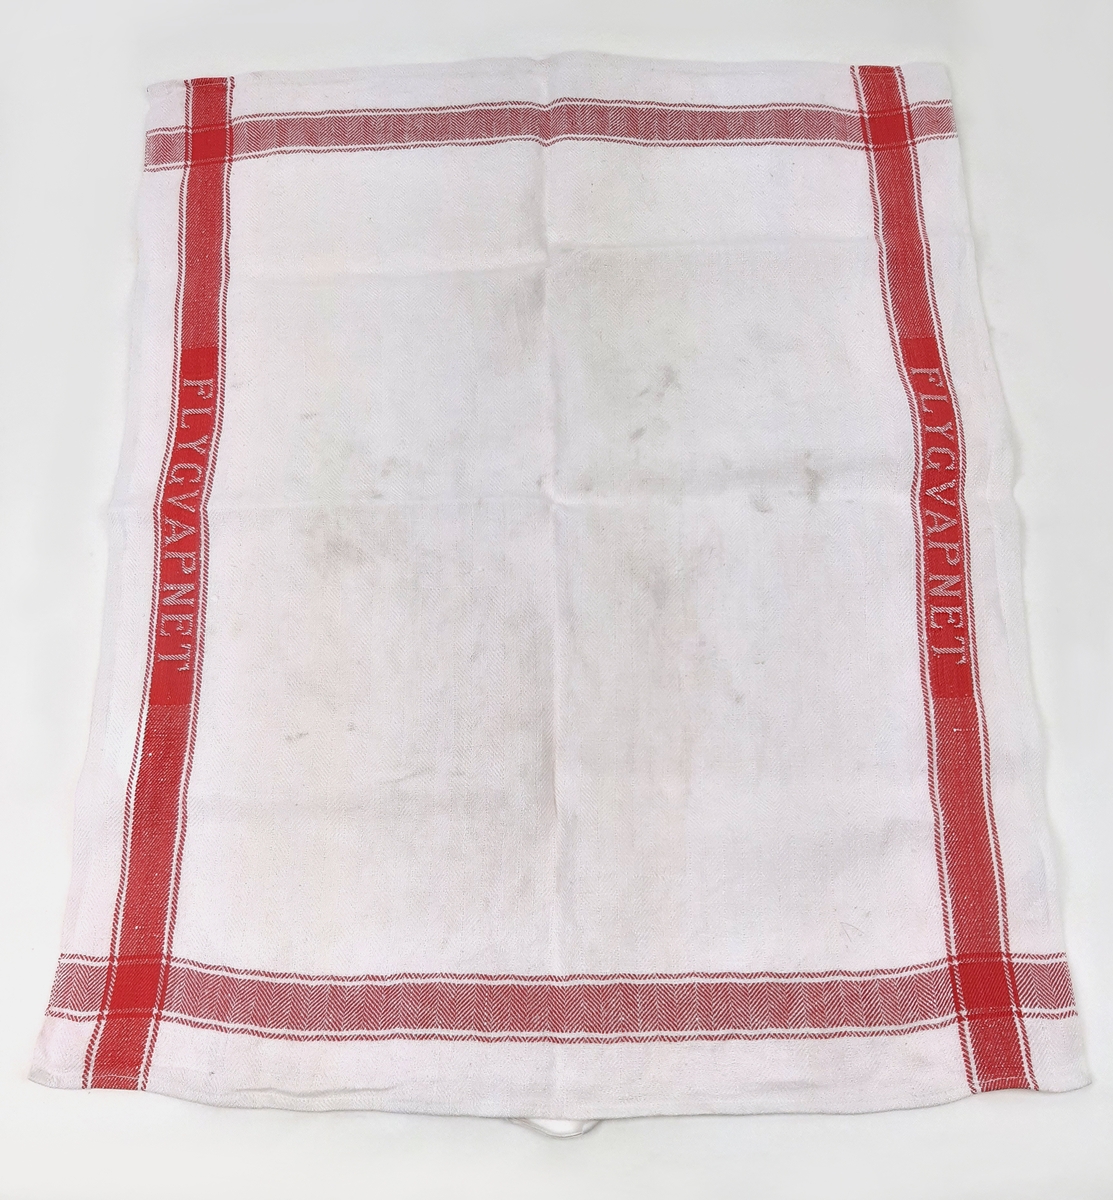 Linnehandduk i vit textil med röda bårder, samt invävd text "FLYGVAPNET".